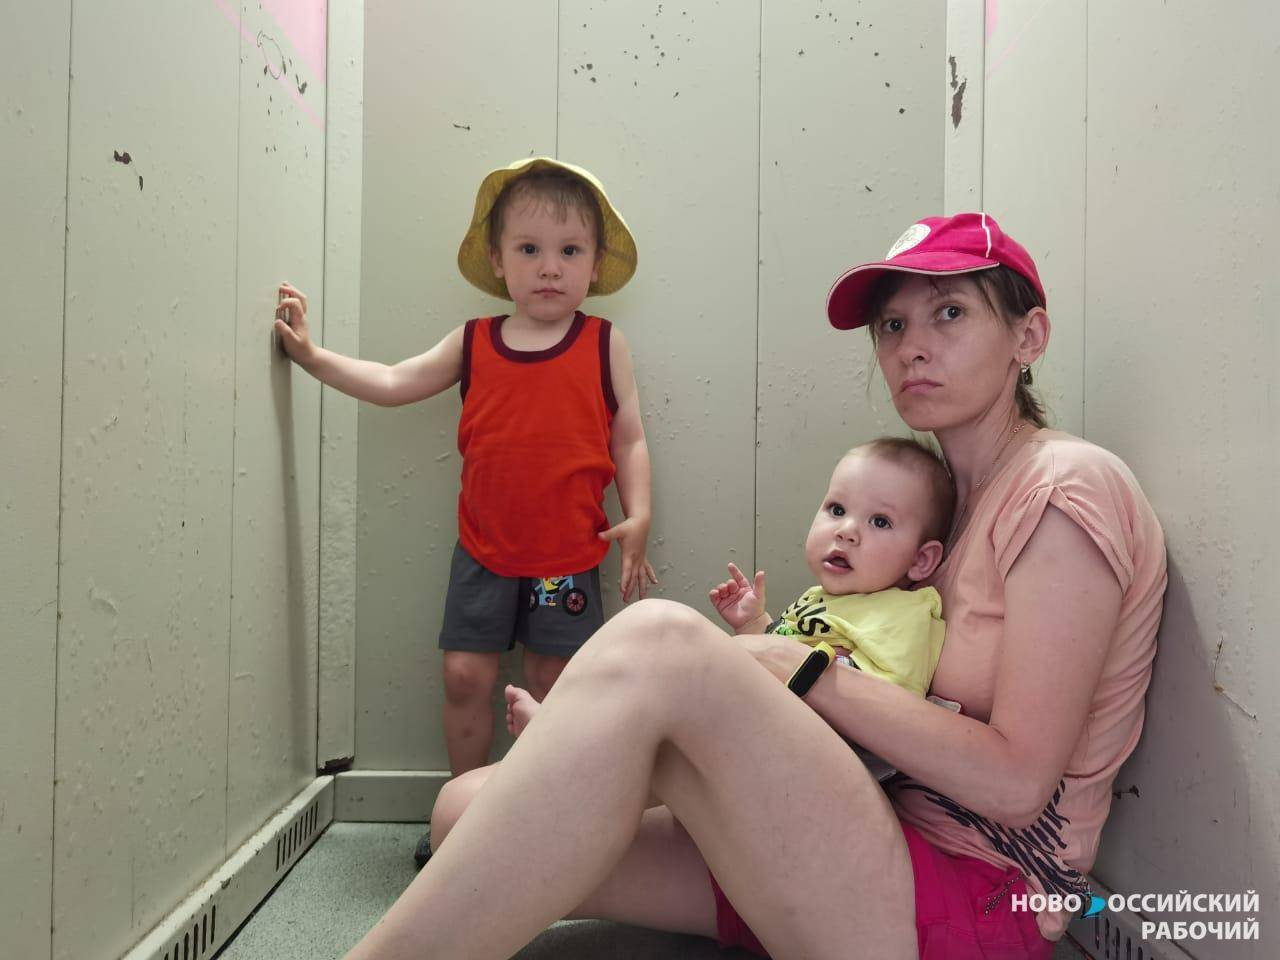 Новороссийцы застревают в новых лифтах. Виноваты скачки напряжения?